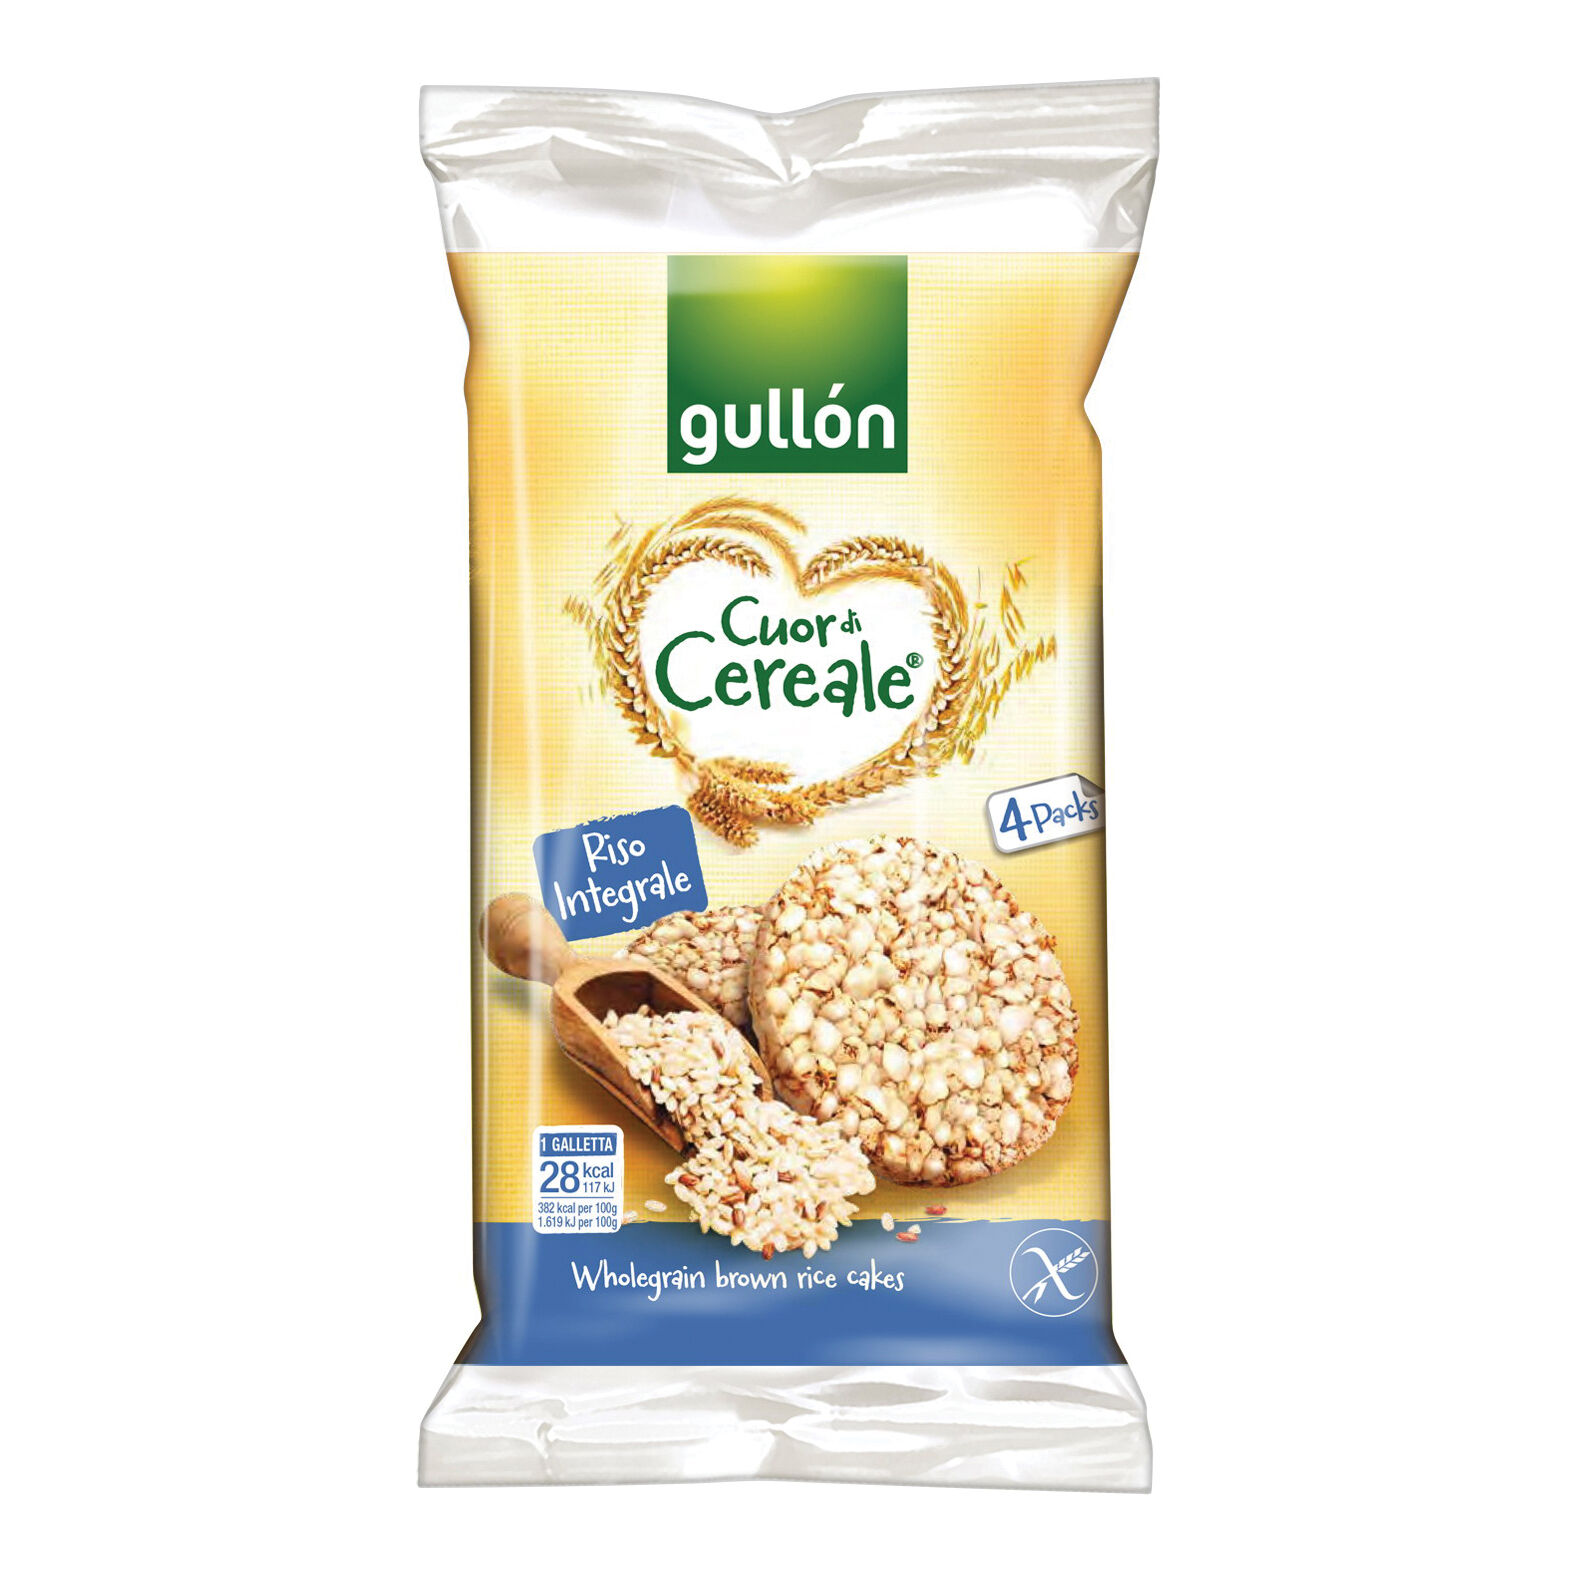 biscotti gullon srl Gullon gallette riso integrale 115,2 g